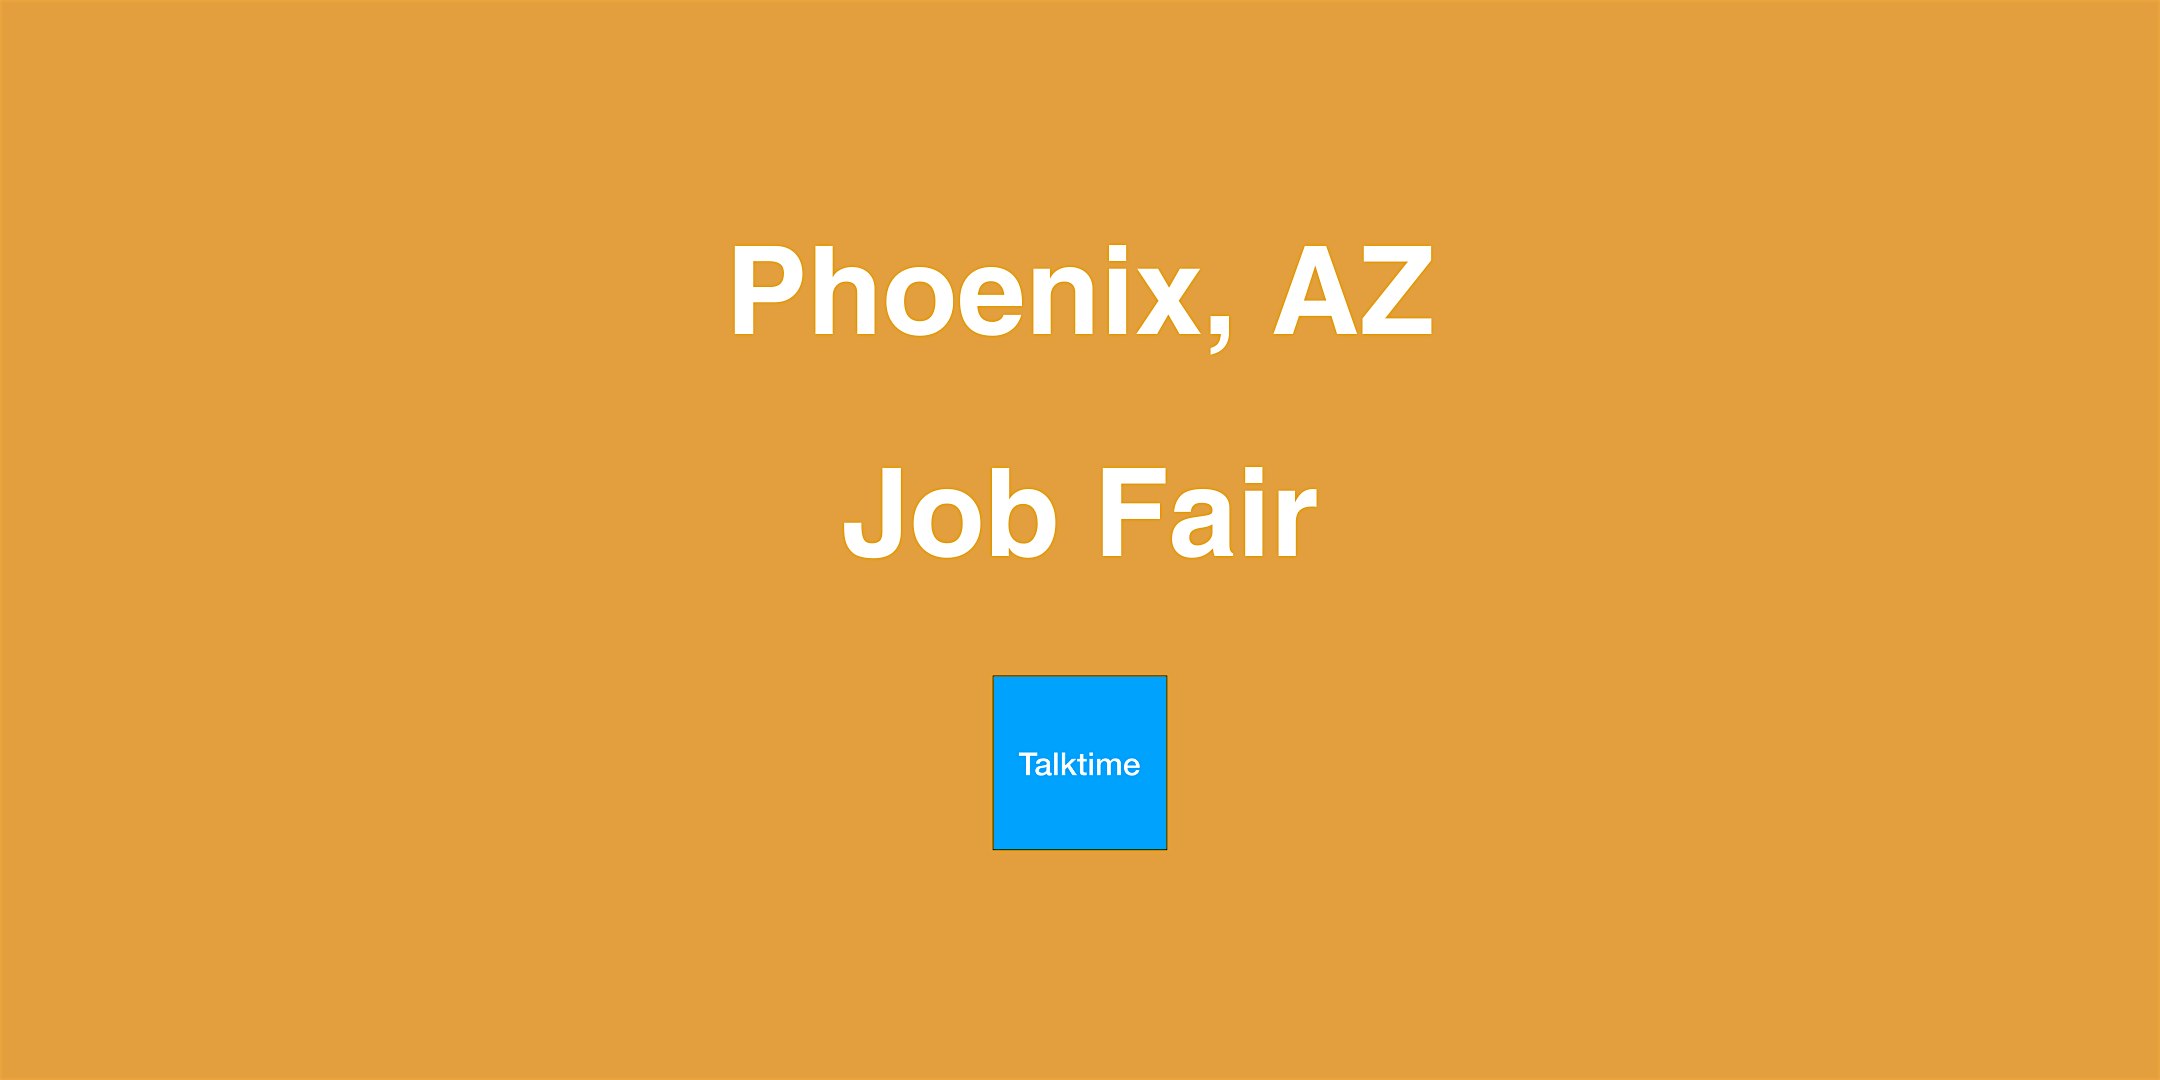 Job Fair - Phoenix